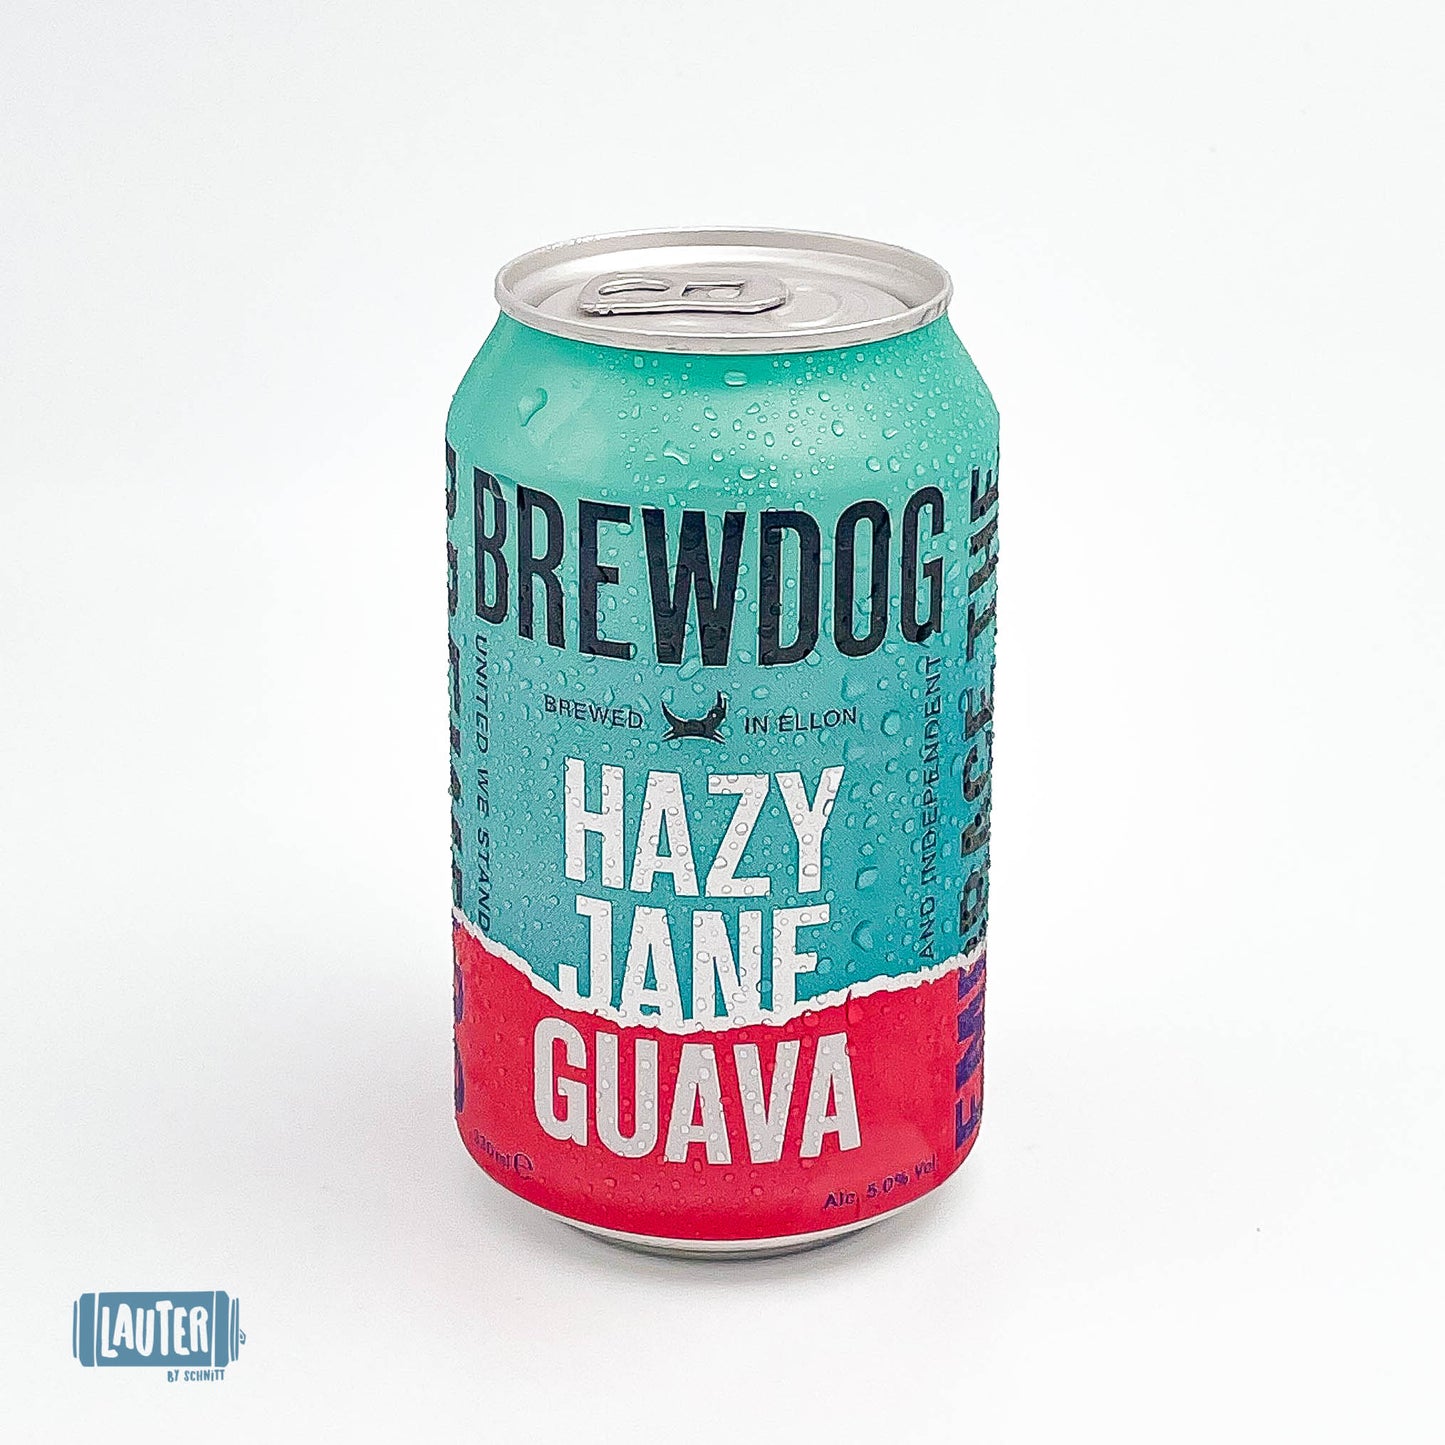 HAZY JANE GUAVA | הייזי ג'יין גויאבה | Brewdog | מבשלת ברודוג